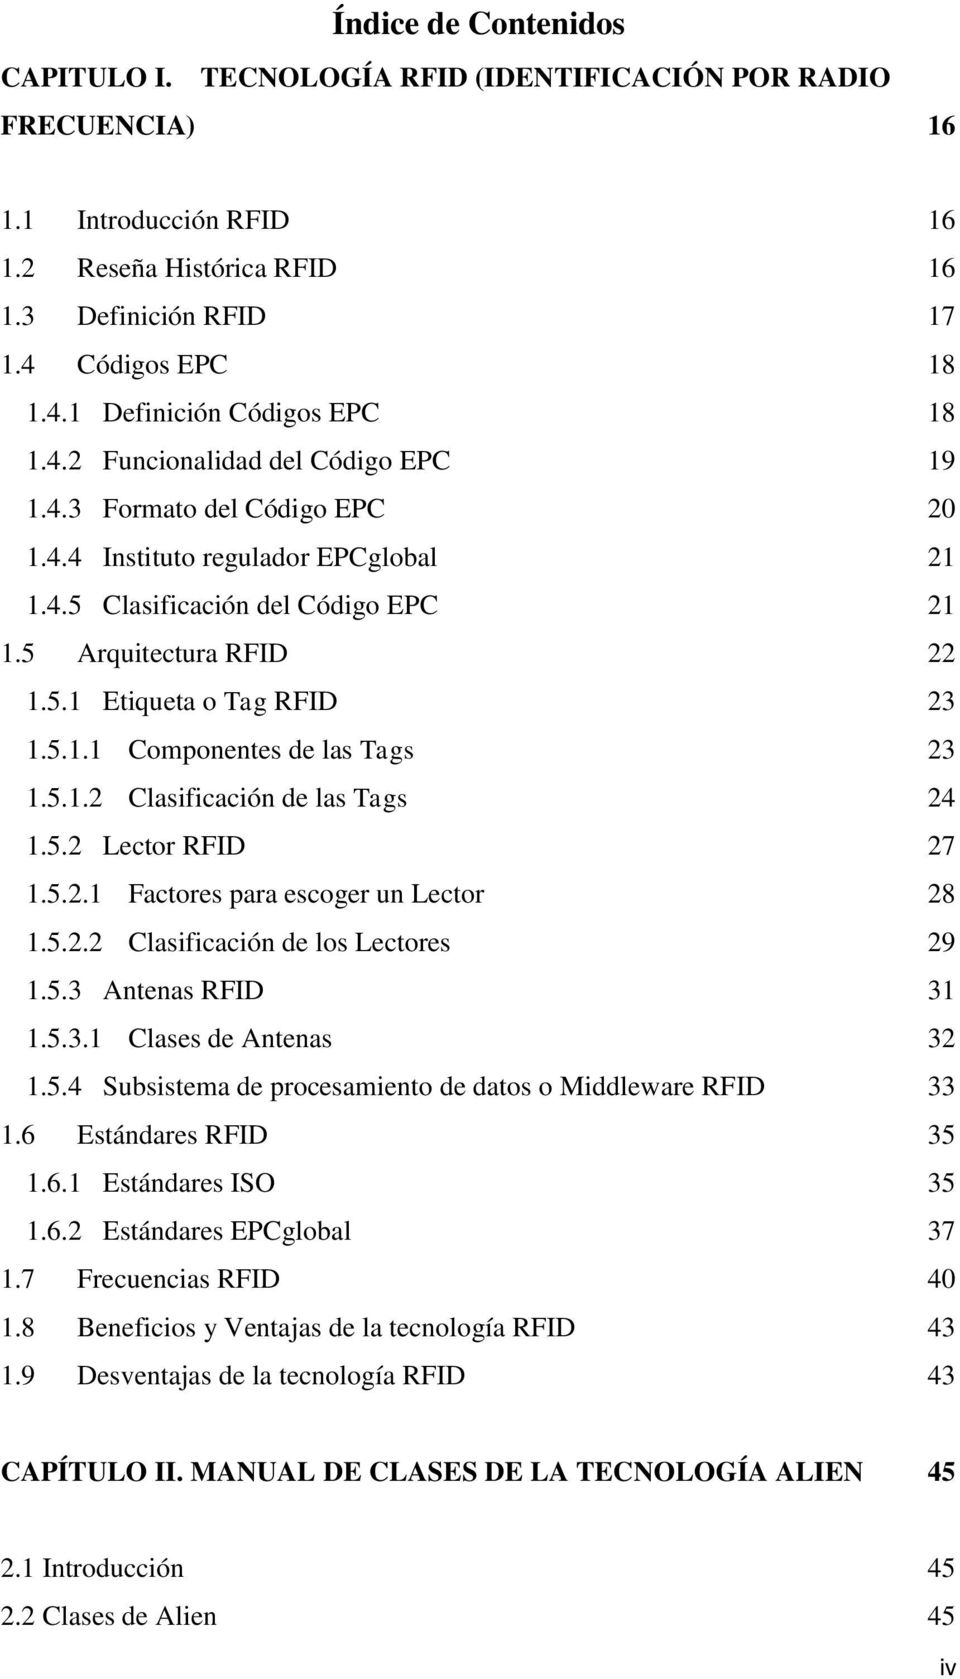 5 Arquitectura RFID 22 1.5.1 Etiqueta o Tag RFID 23 1.5.1.1 Componentes de las Tags 23 1.5.1.2 Clasificación de las Tags 24 1.5.2 Lector RFID 27 1.5.2.1 Factores para escoger un Lector 28 1.5.2.2 Clasificación de los Lectores 29 1.